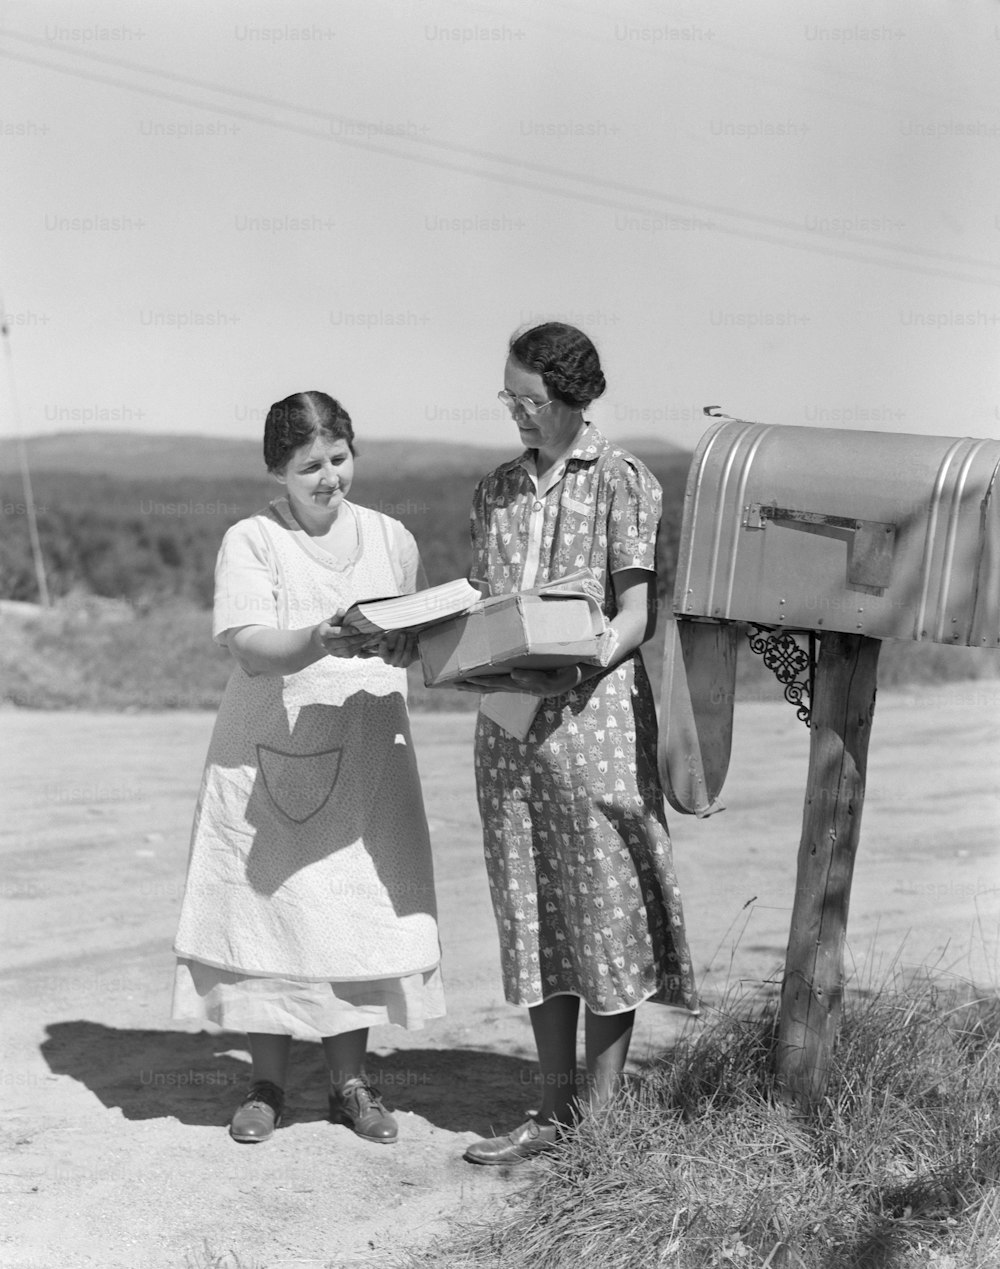 ESTADOS UNIDOS - CIRCA 1940s: Dos mujeres recogen el correo del buzón del país.